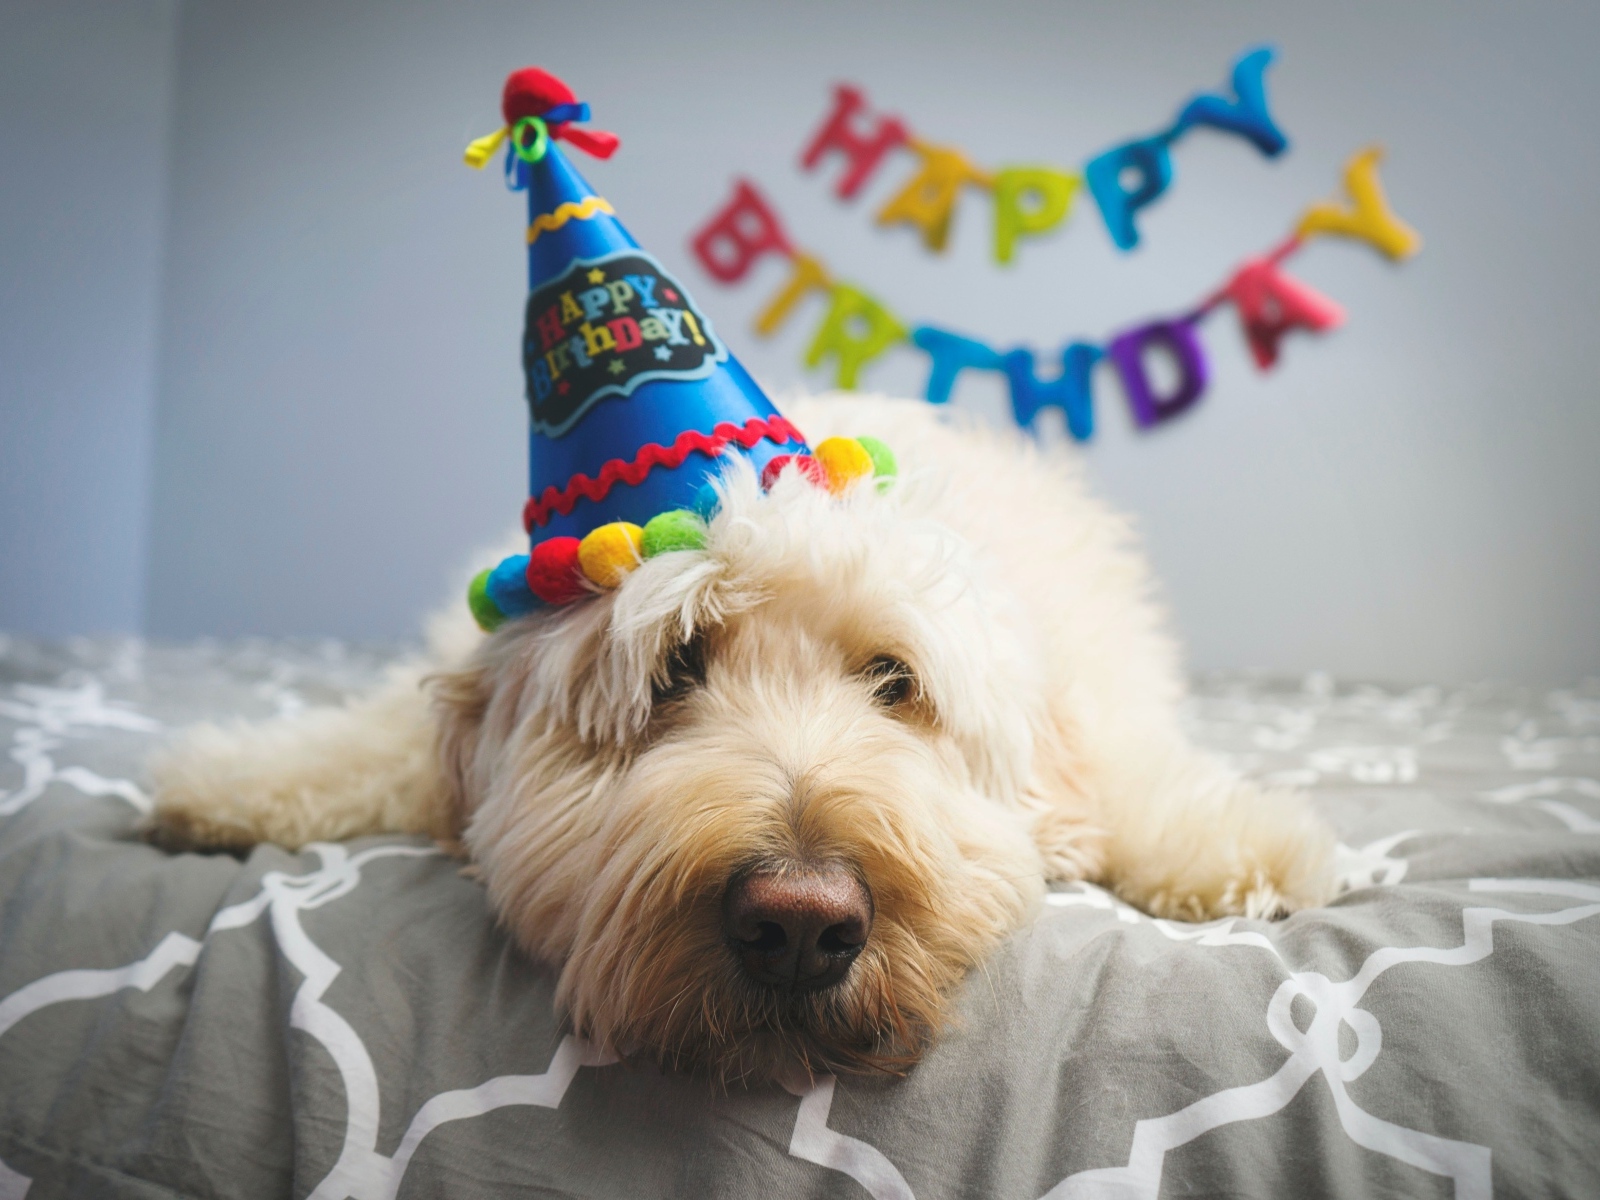 Грустный белый пес отмечает день рождения